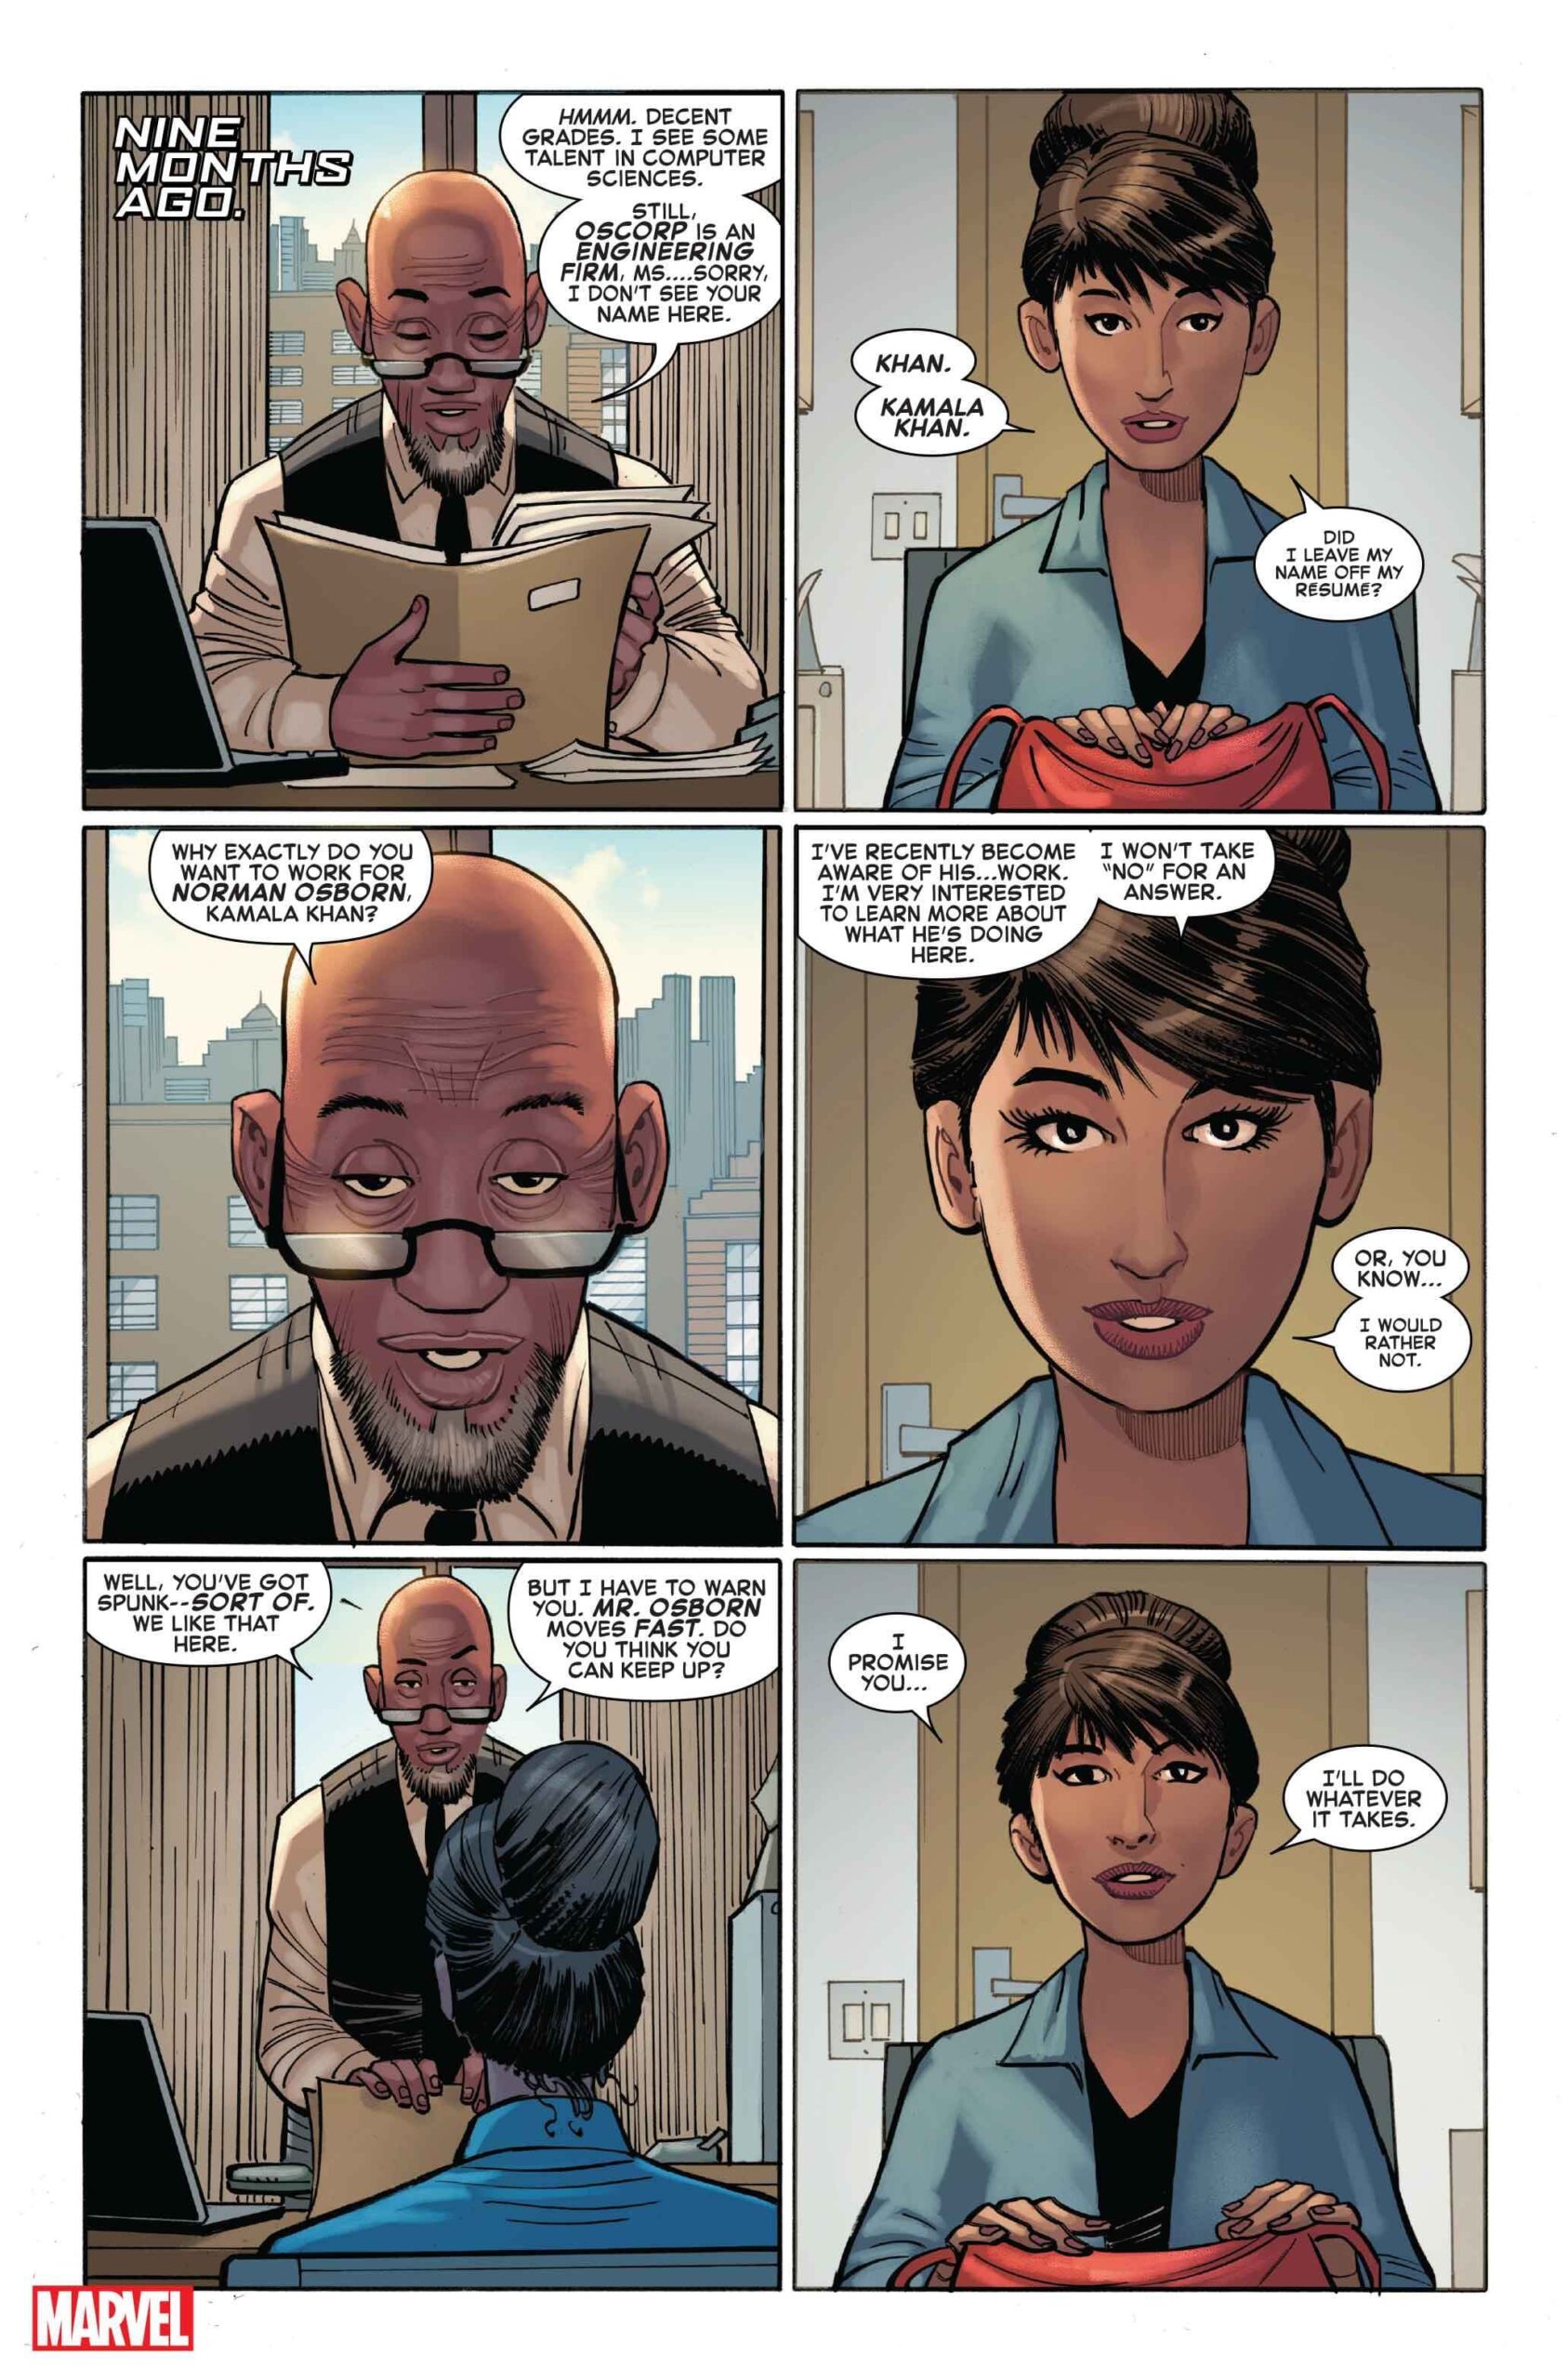 A Morte de Ms Marvel - Amazing Spider-Man #26 - Marvel Comics - Preview 1 - Blog Farofeiros